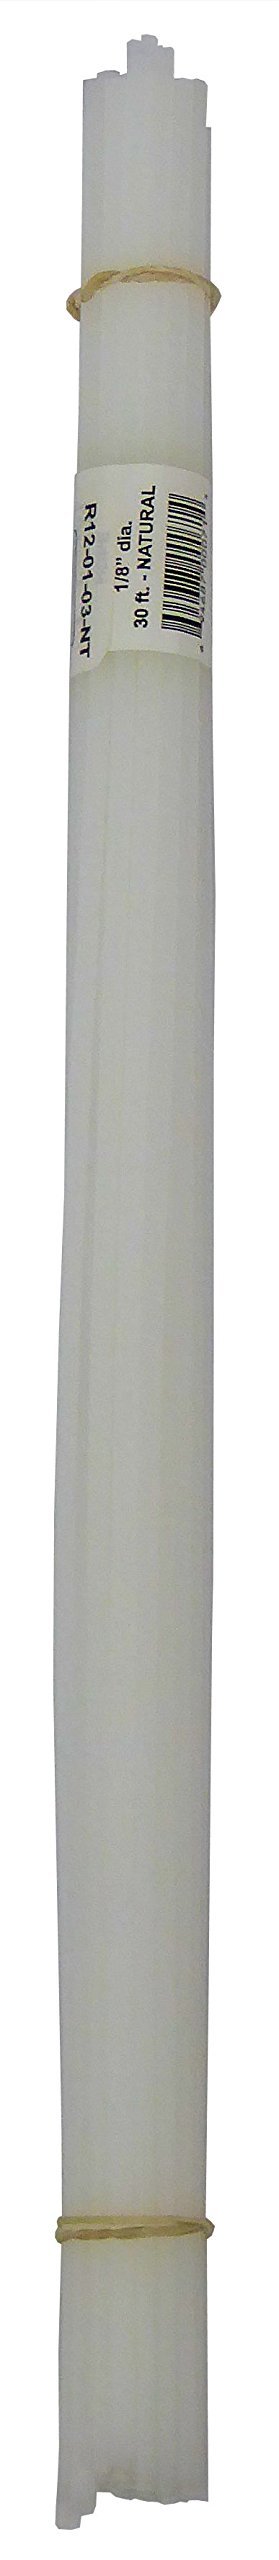 High Density Polyethylene (HDPE) Plastic Welding Rod, 1/8" diameter, 30 ft., Natural - NewNest Australia